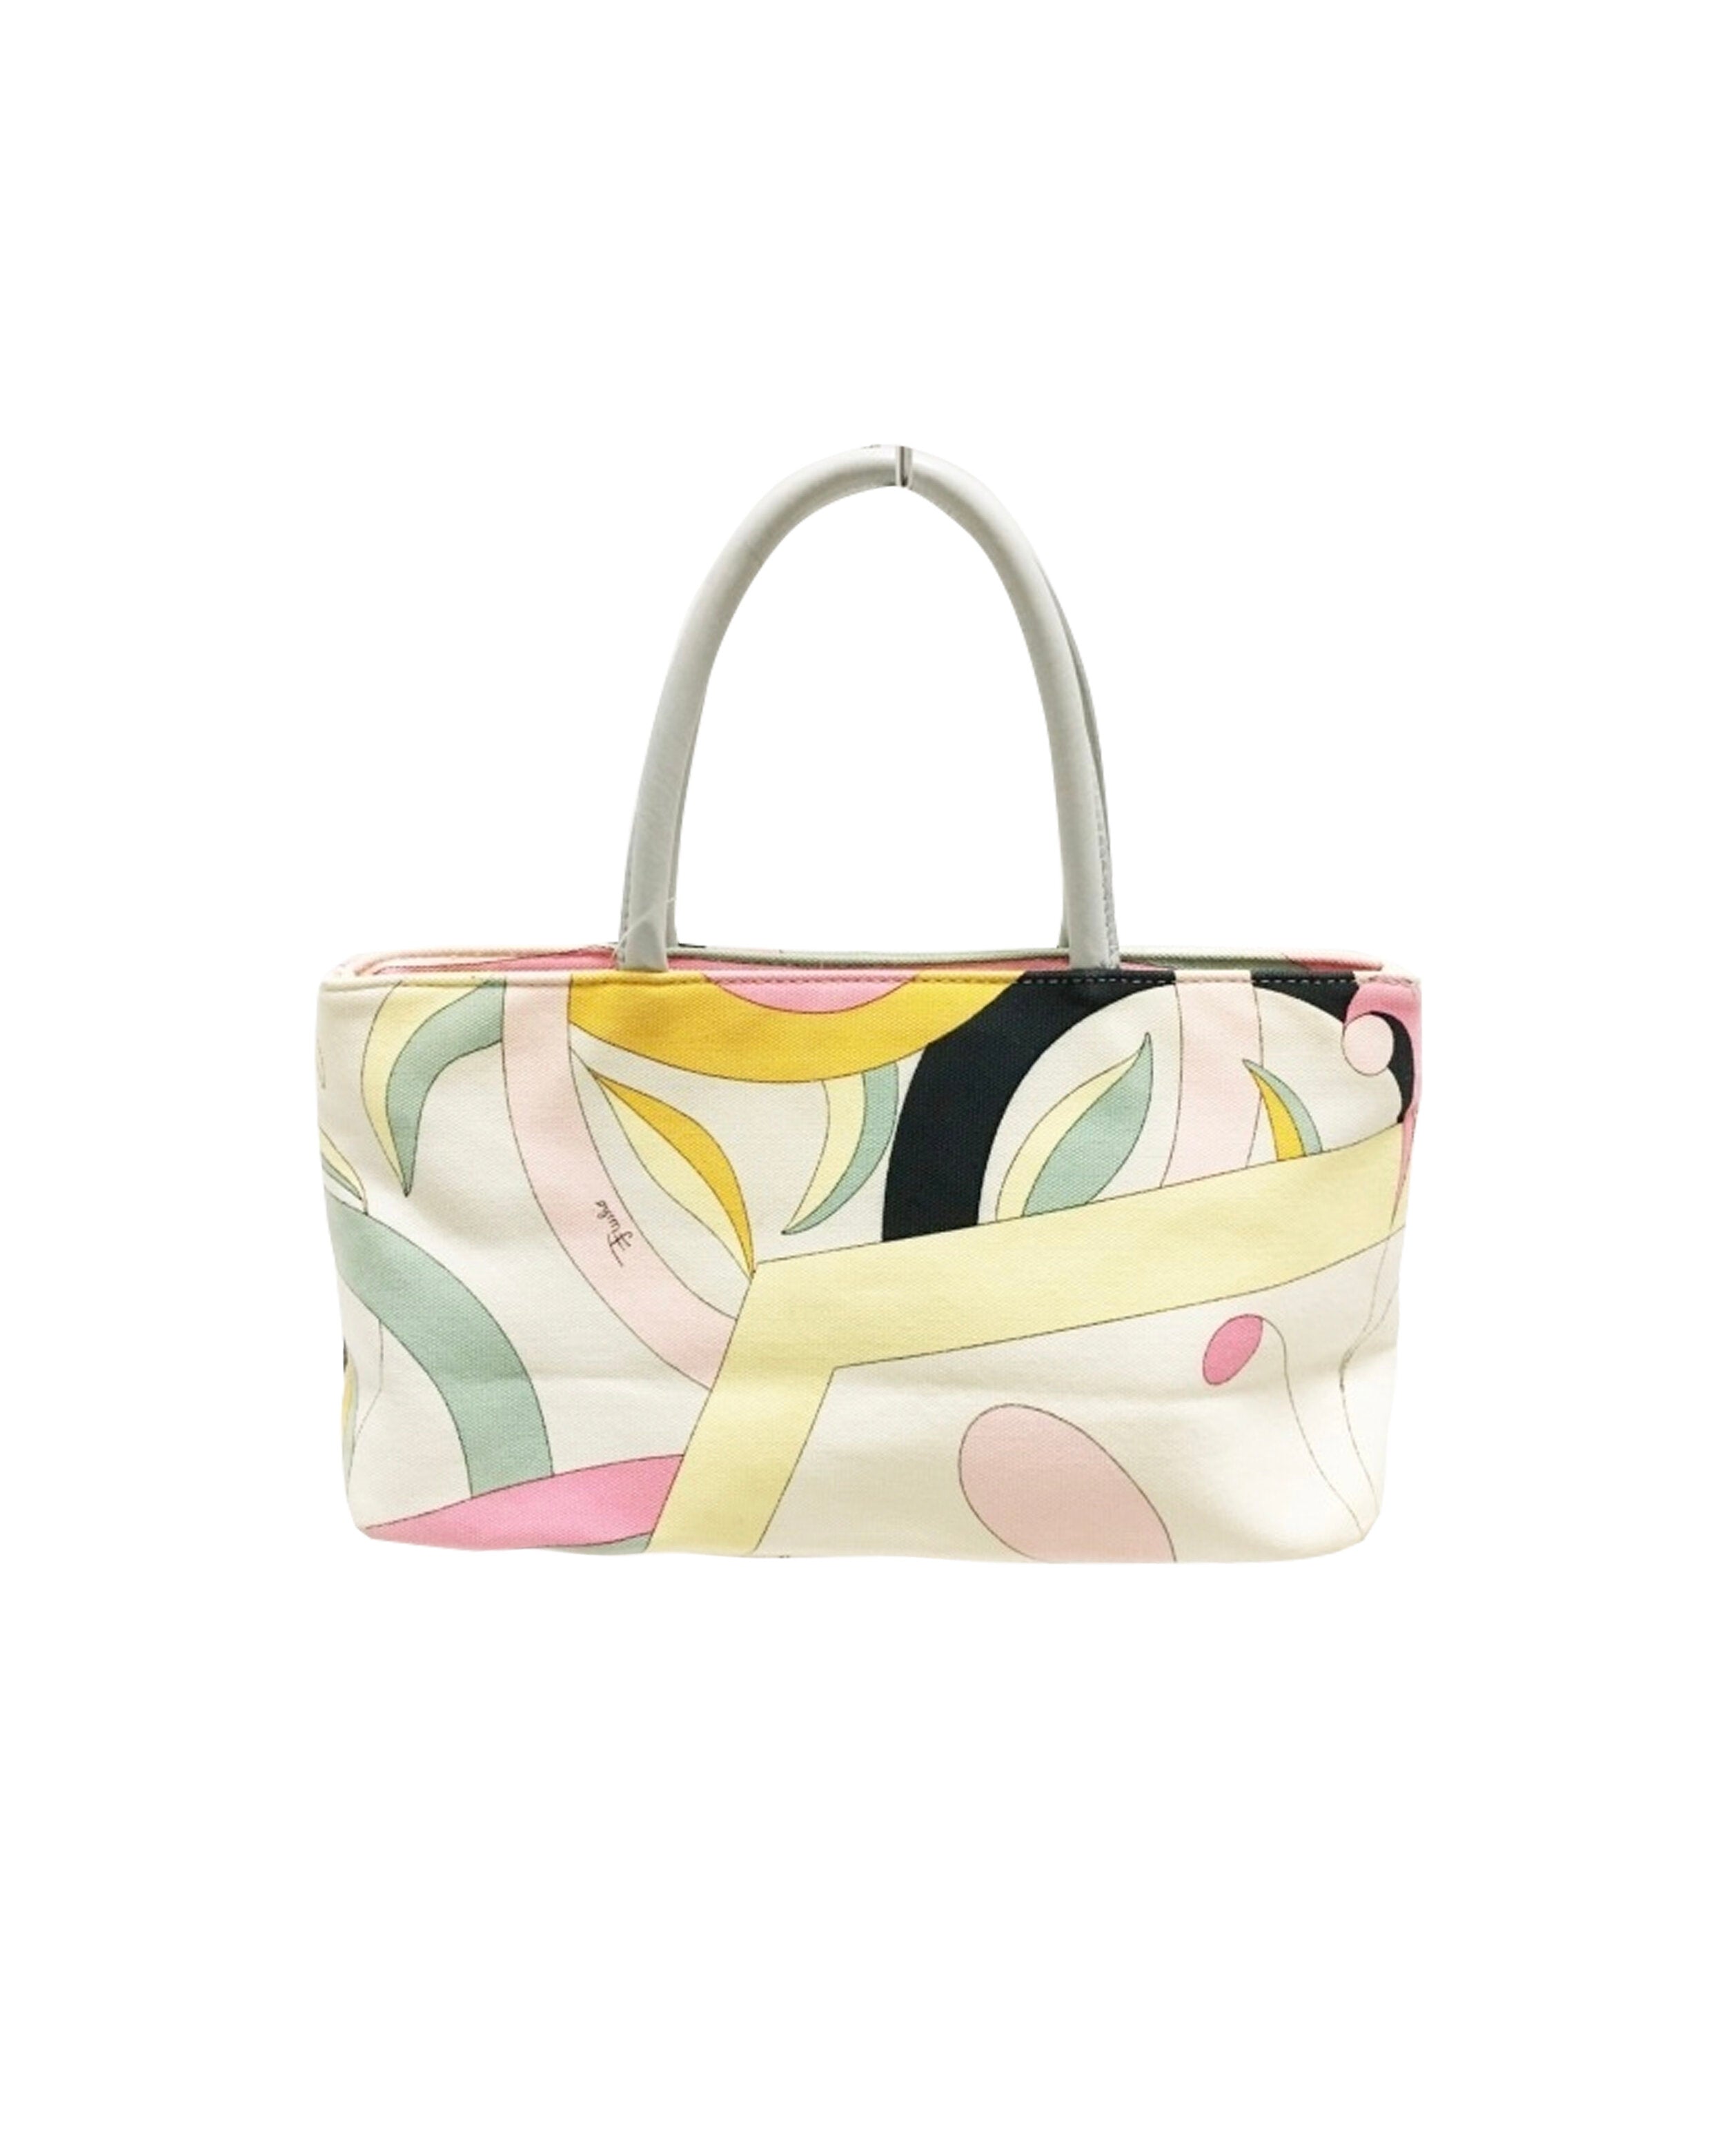 Emilio Pucci Small Multi-Color Tote Bag